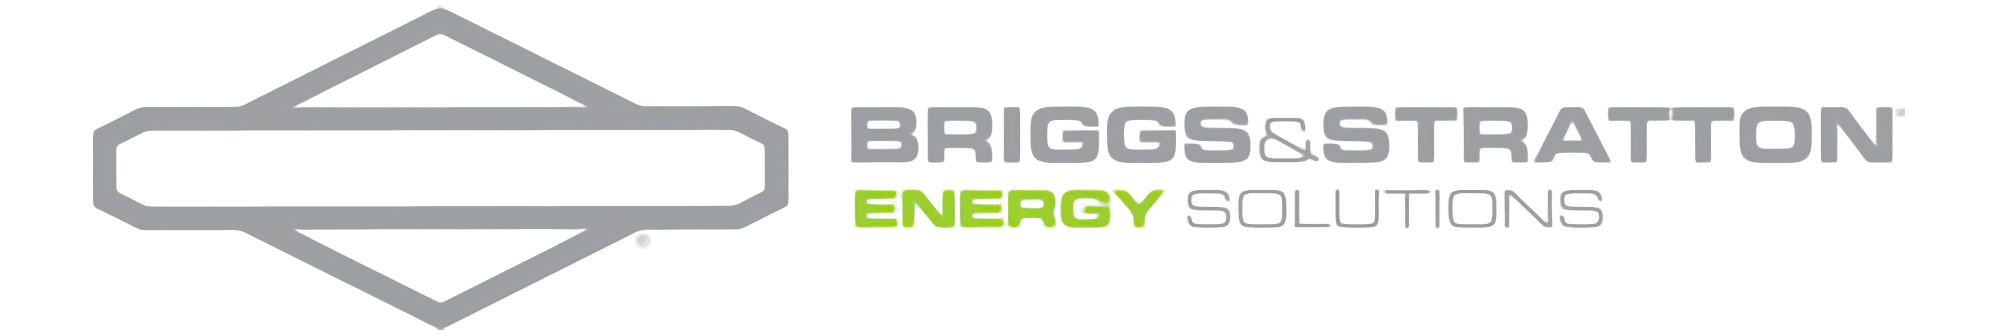 Briggs &amp; stratton logo